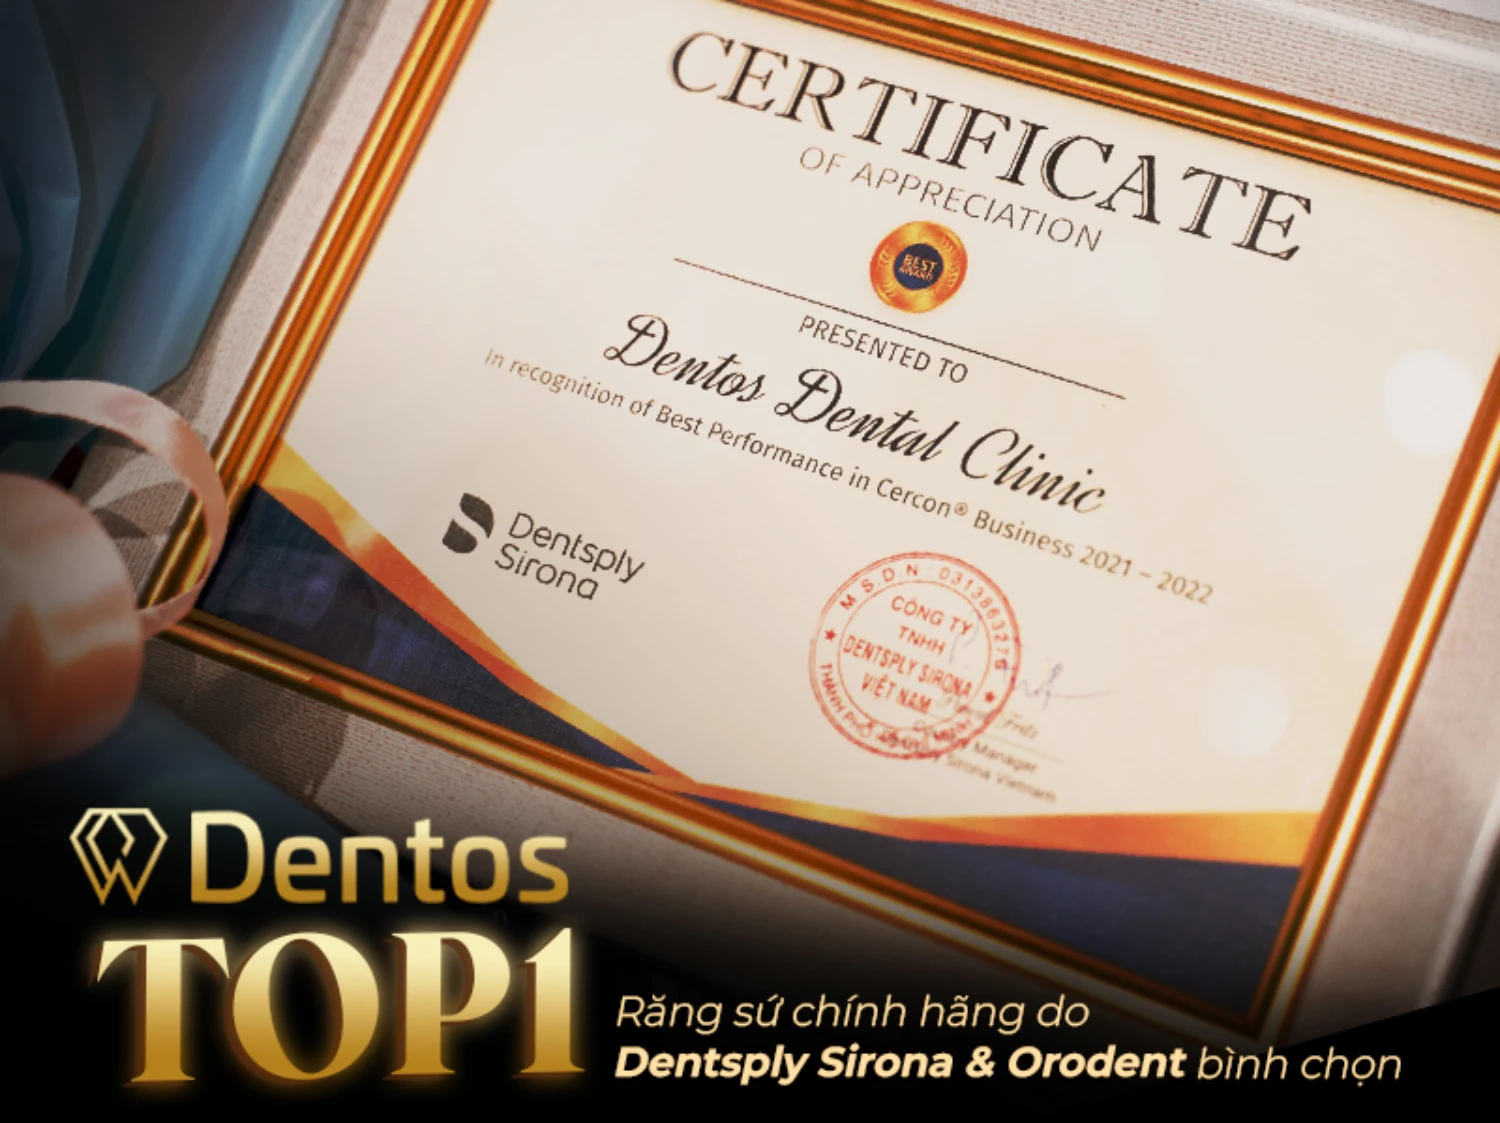 Dentos được bình chọn là TOP 1 Nha Khoa có sản lượng tiêu thụ răng sứ chính hãng lớn nhất Việt Nam